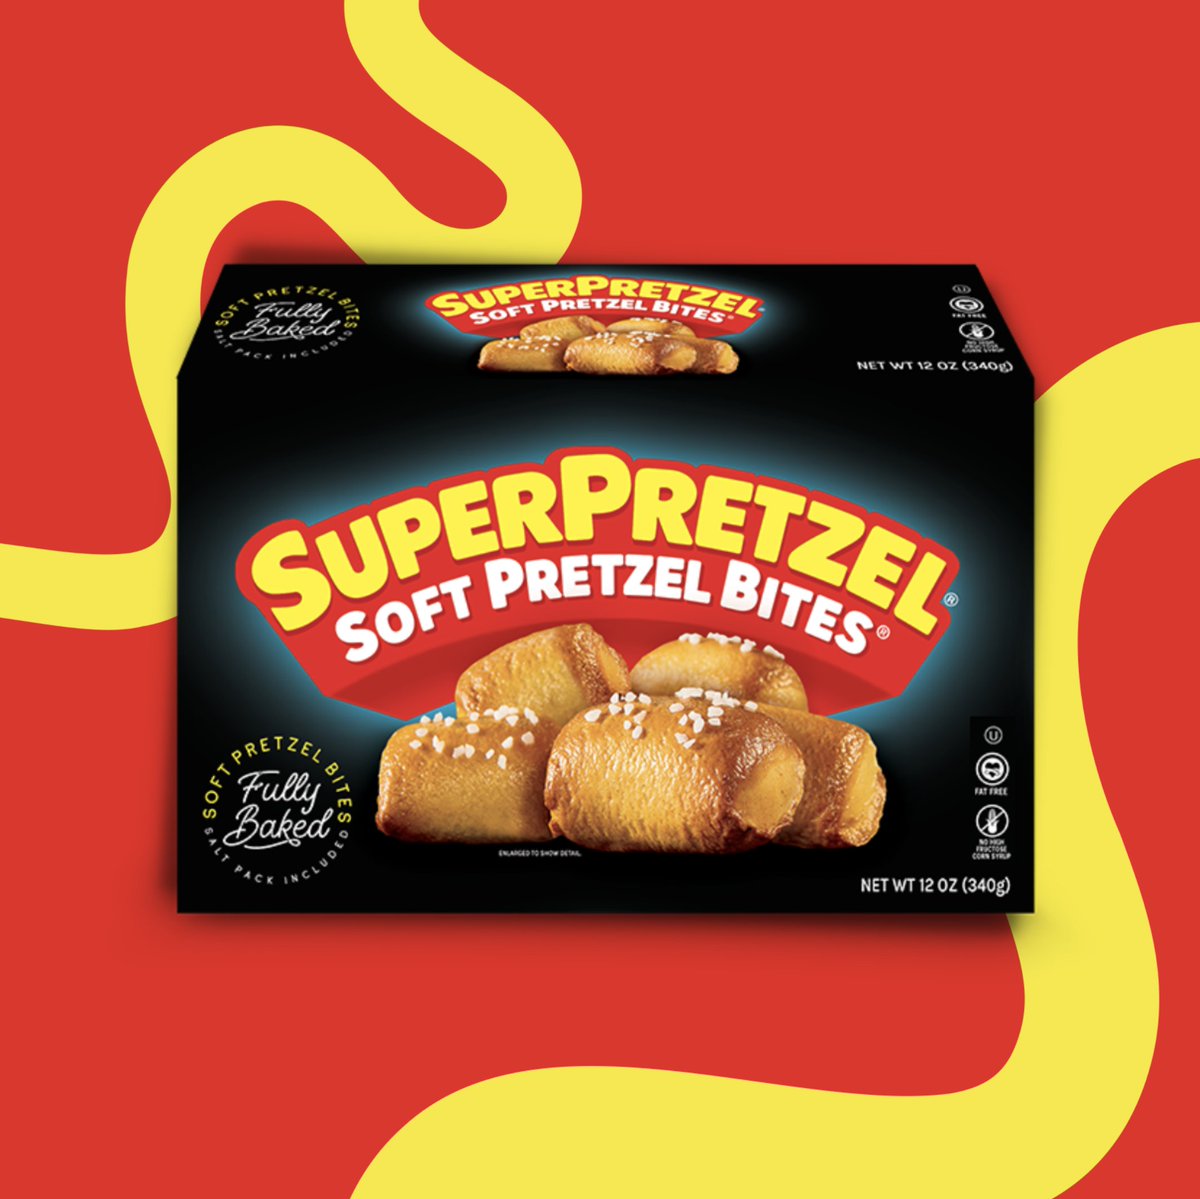 SUPERPRETZEL Soft Pretzel Bites = the most convenient snack! 😋